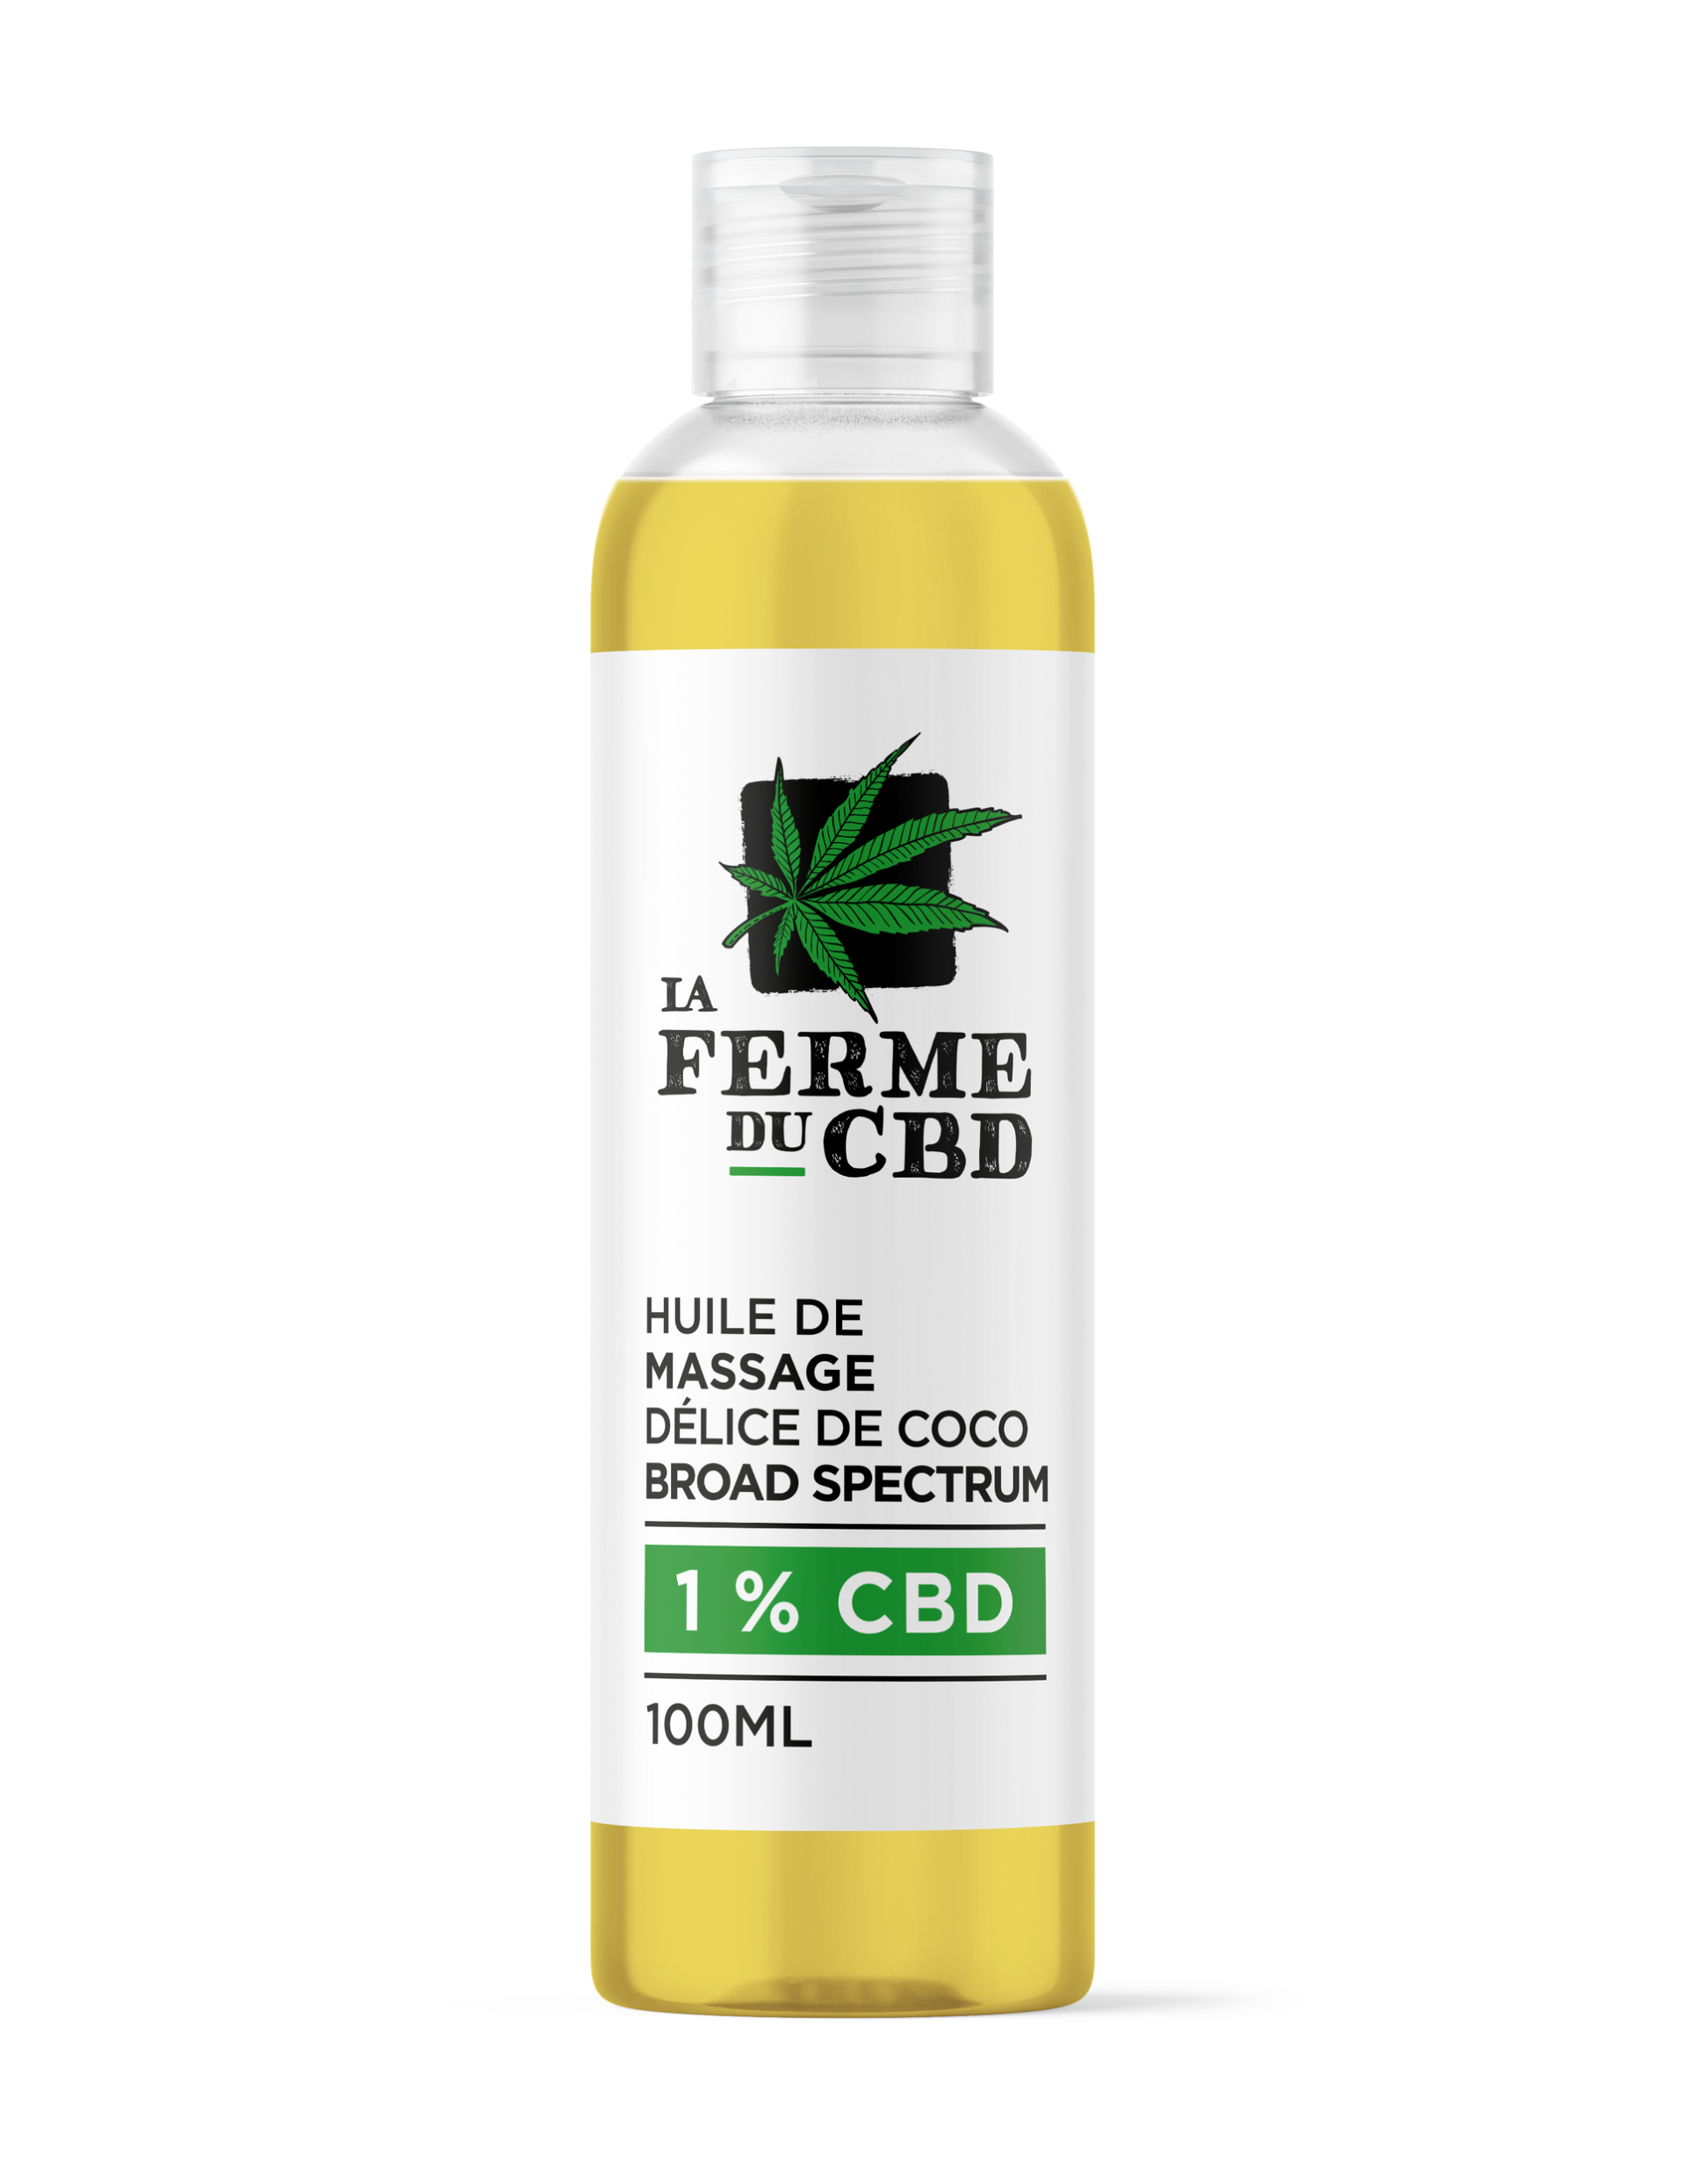 Flacon de 100ml d'huile de massage au CBD parfumé à la noix de coco, de la marque La Ferme du CBD